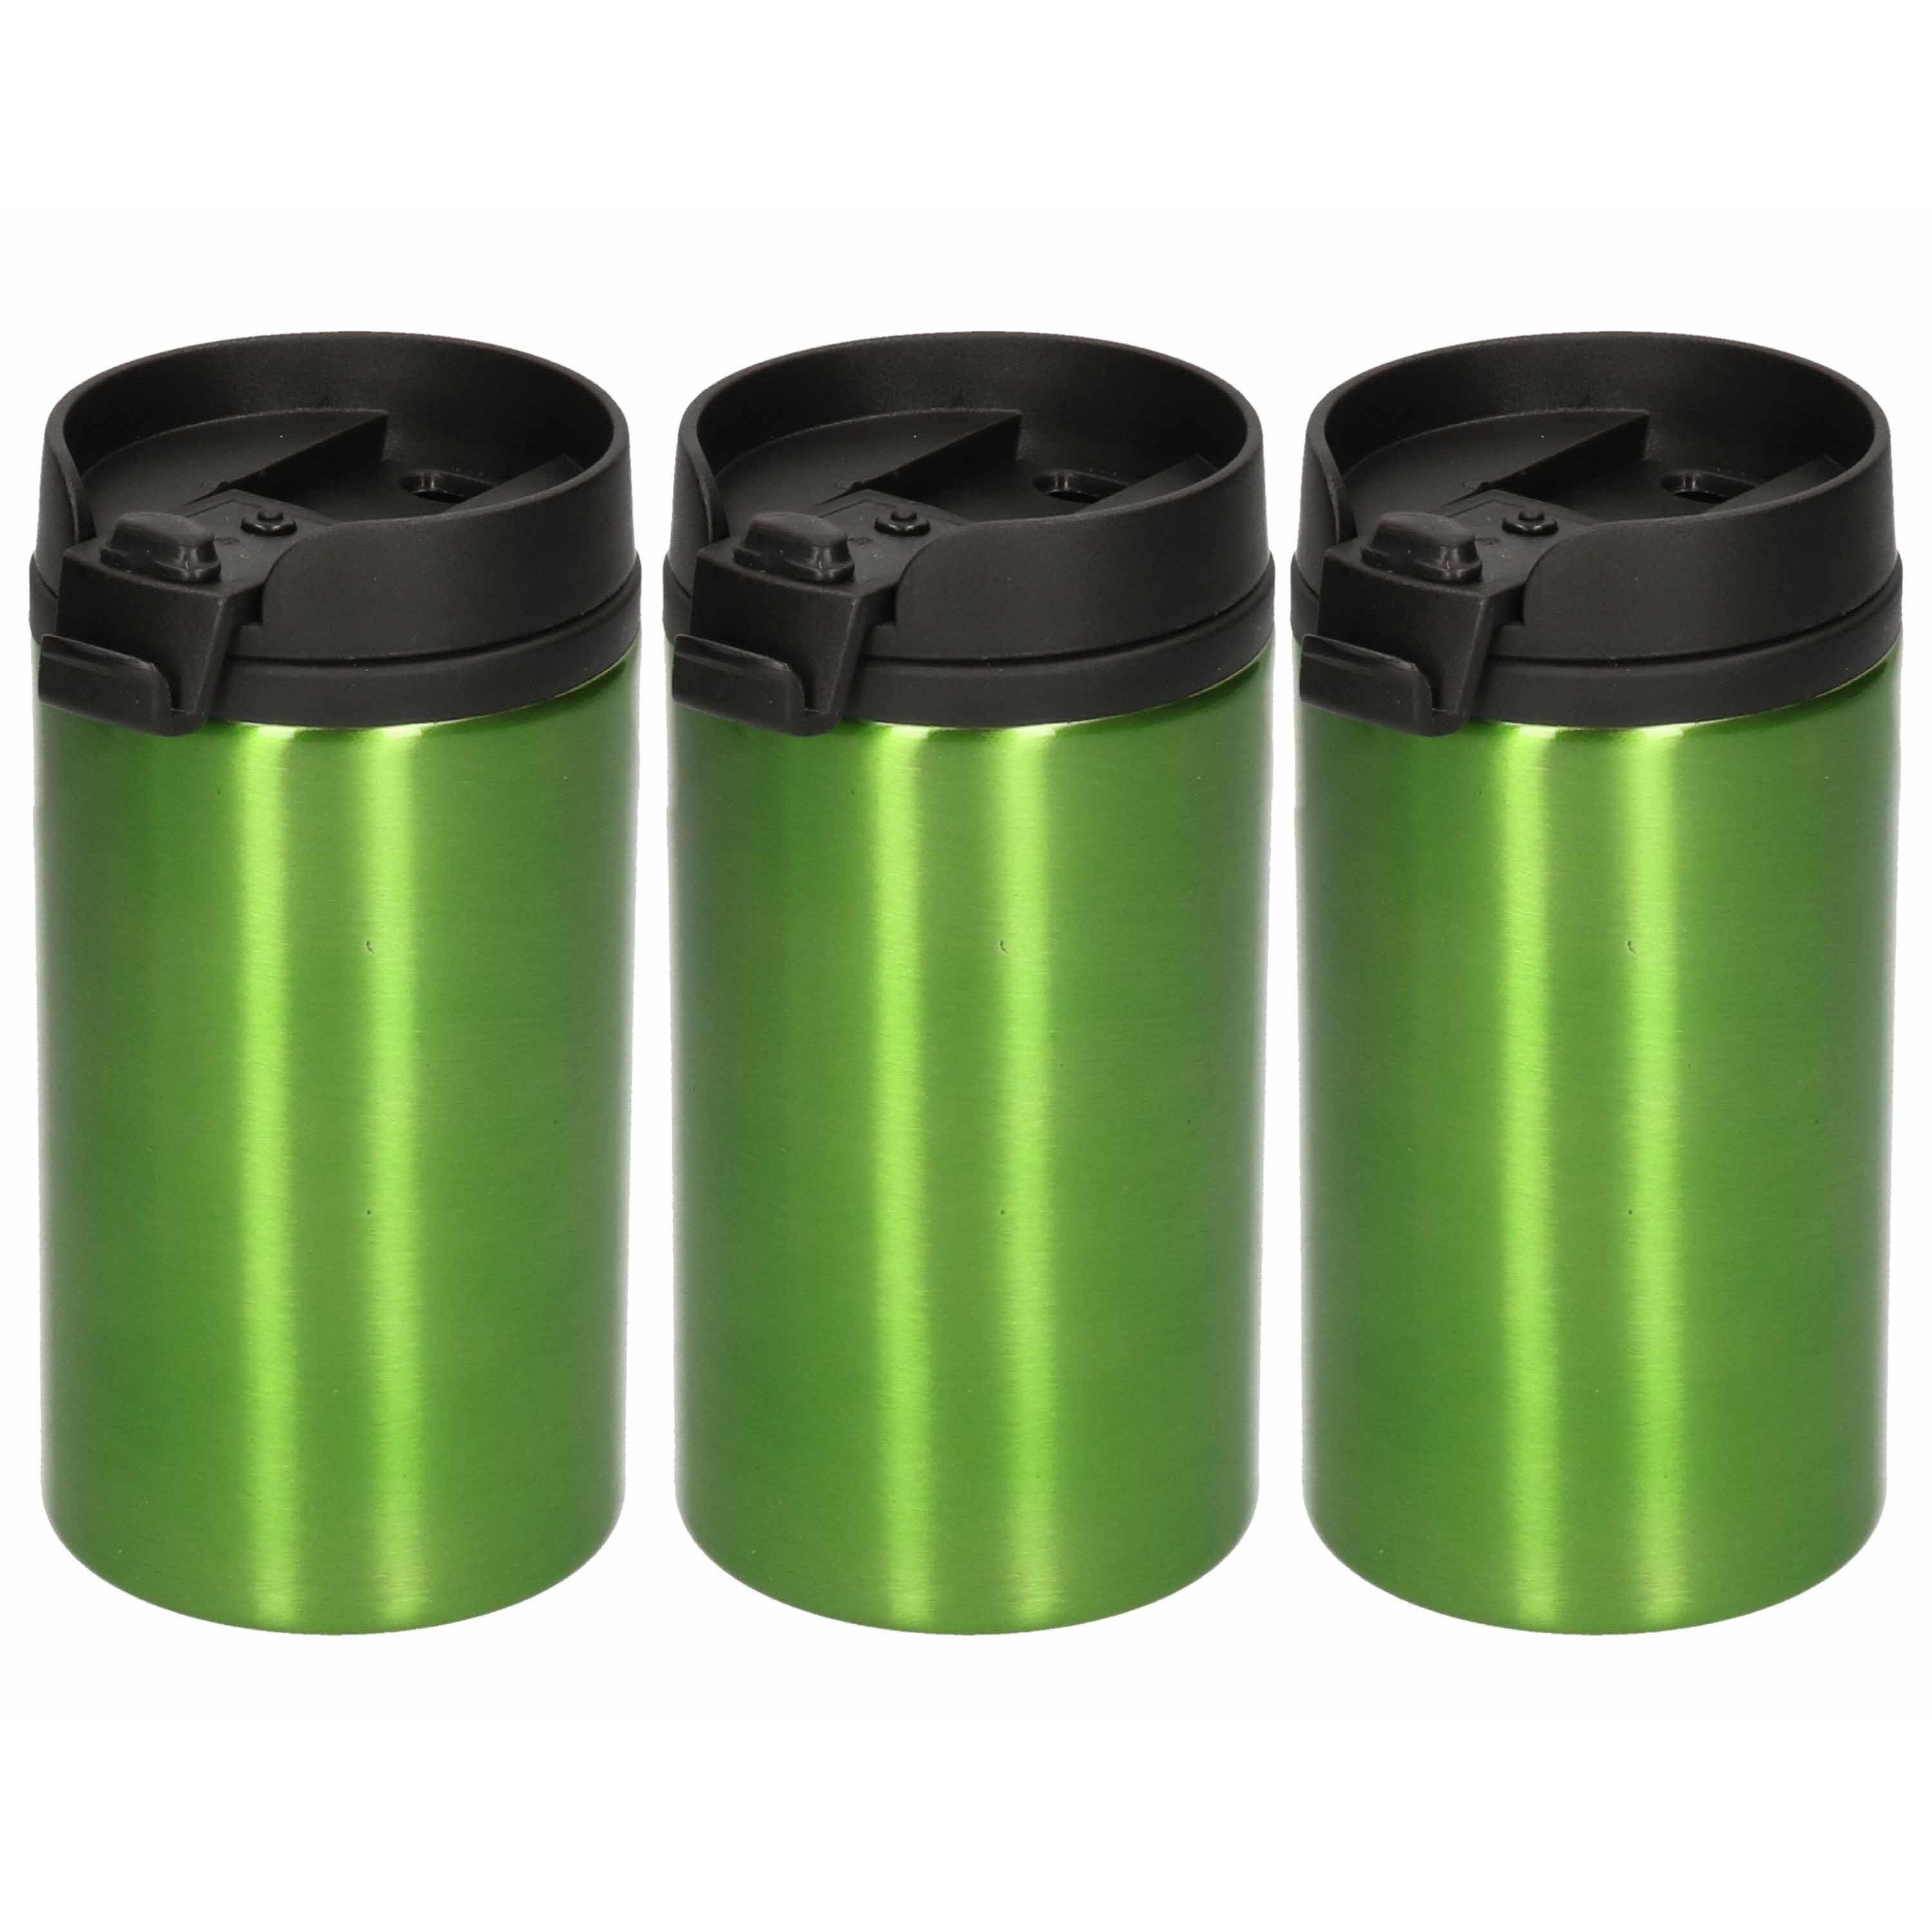 5x Isoleerbekers RVS metallic groen 320 ml